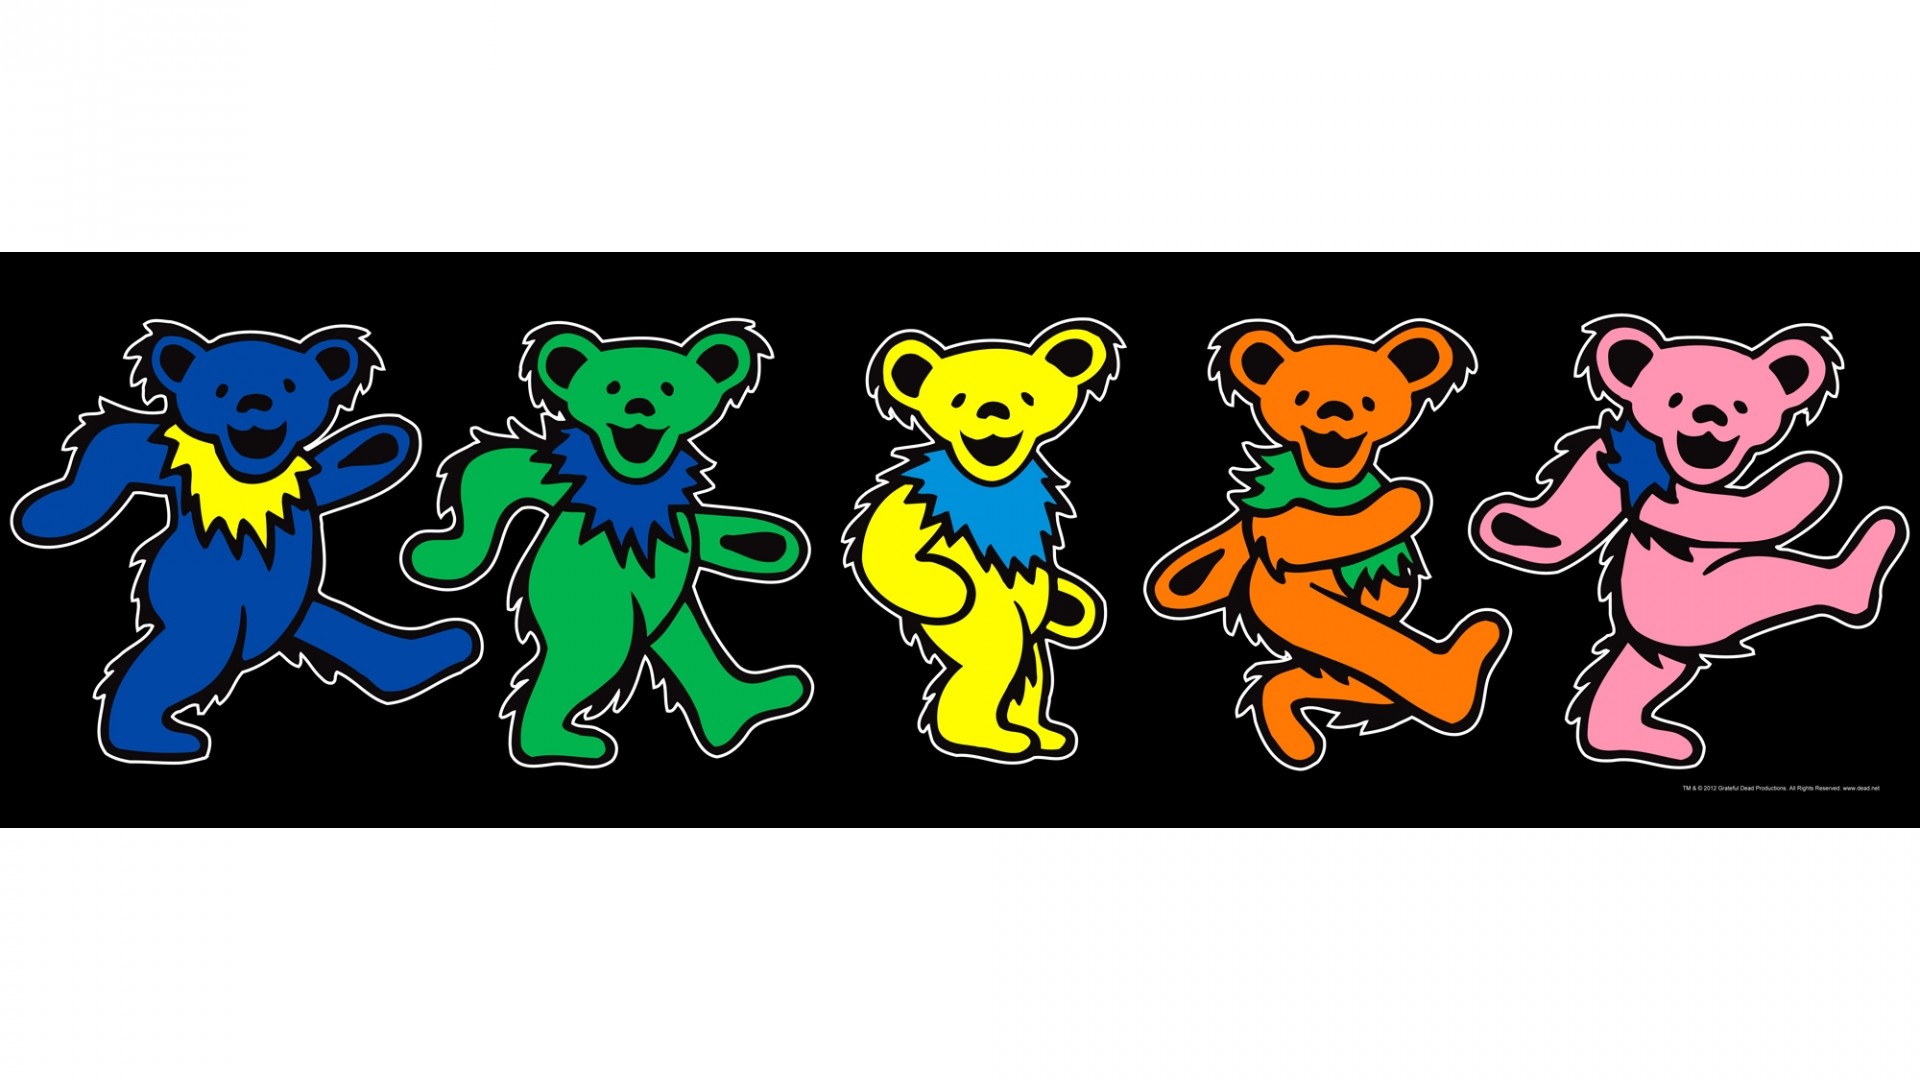 1920x1080 ... Grateful Dead dancing bears come to 2000x2000. Download resolutions:  Desktop:  ...